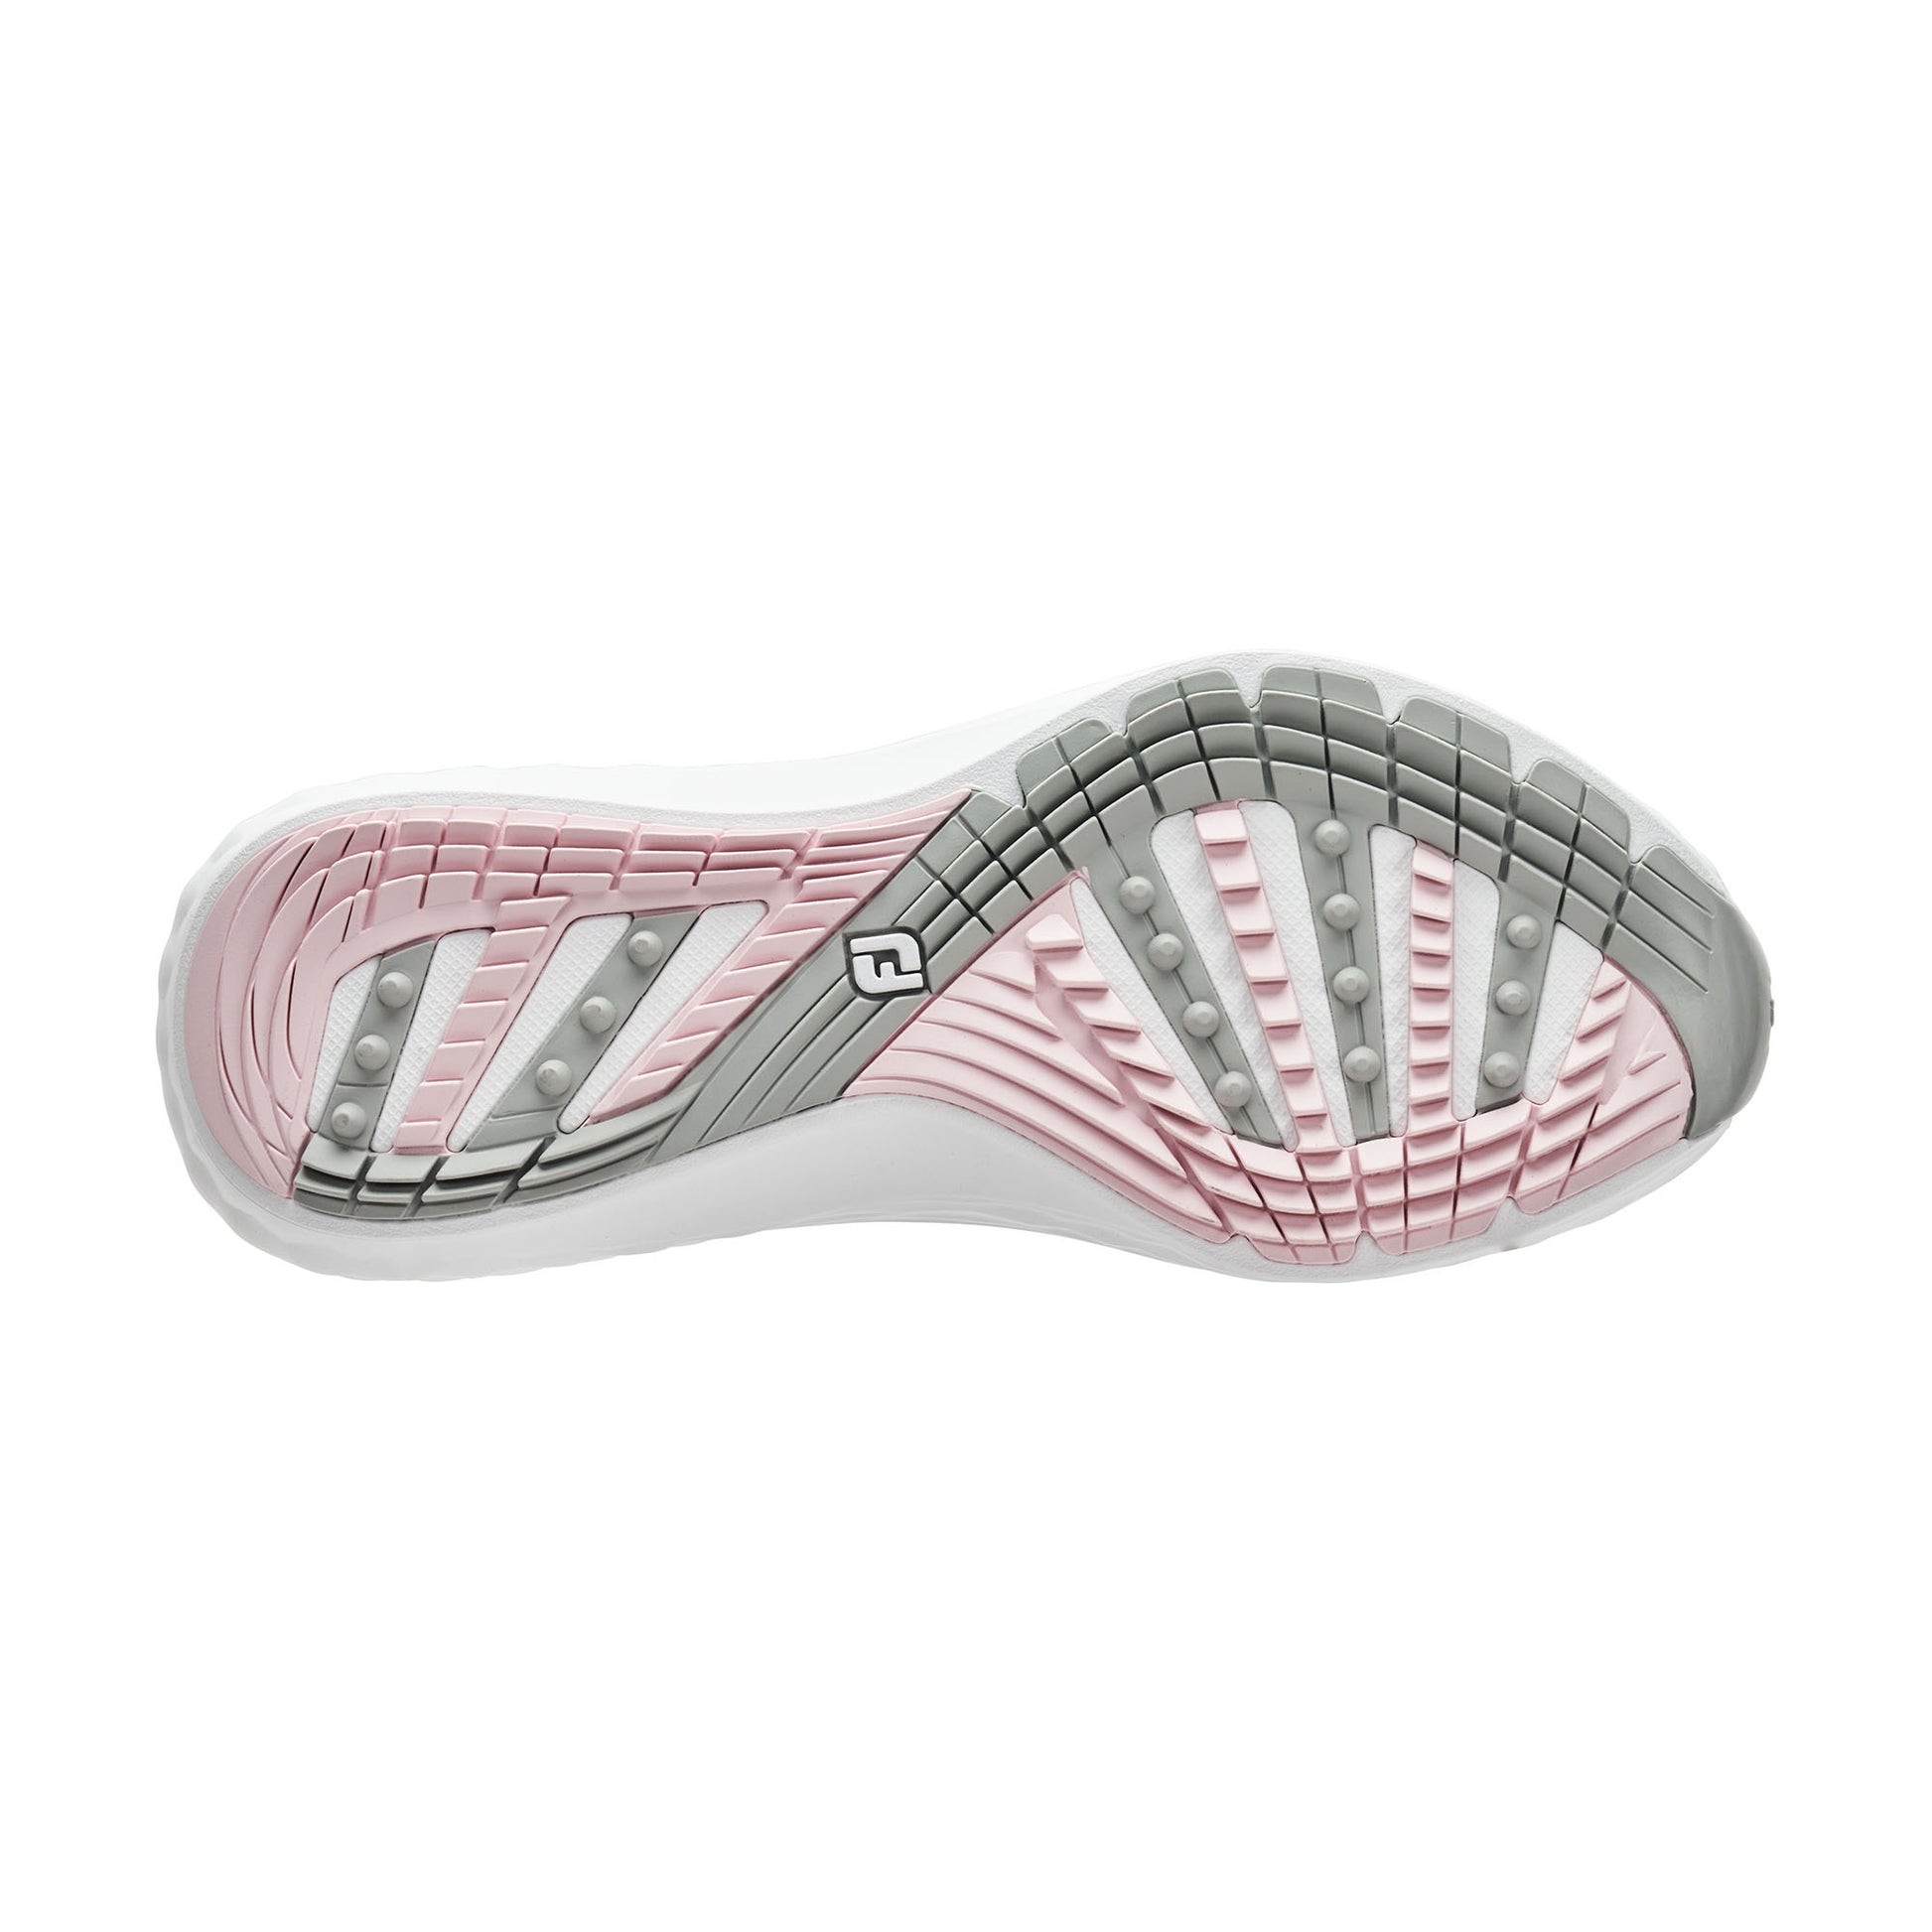 FootJoy Ladies Waterproof Quantum Golf Shoes in White, Grey & Pink